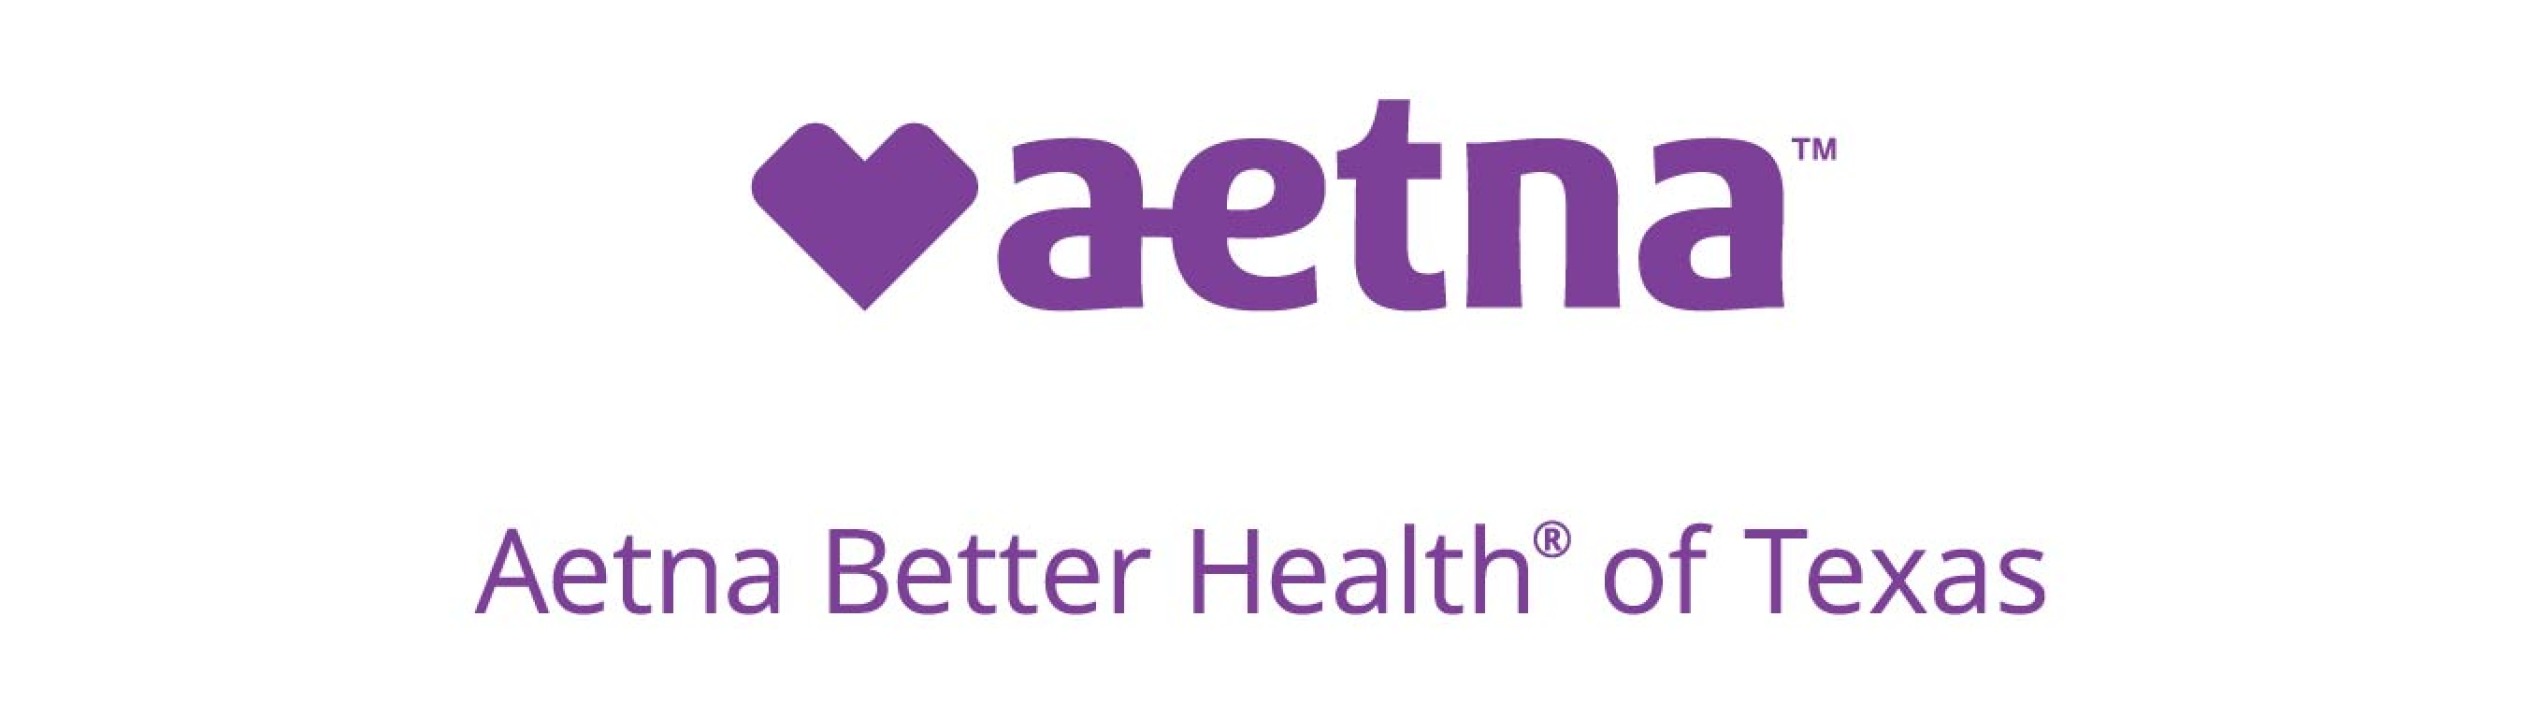 Aetna Better Health of Texas Logo